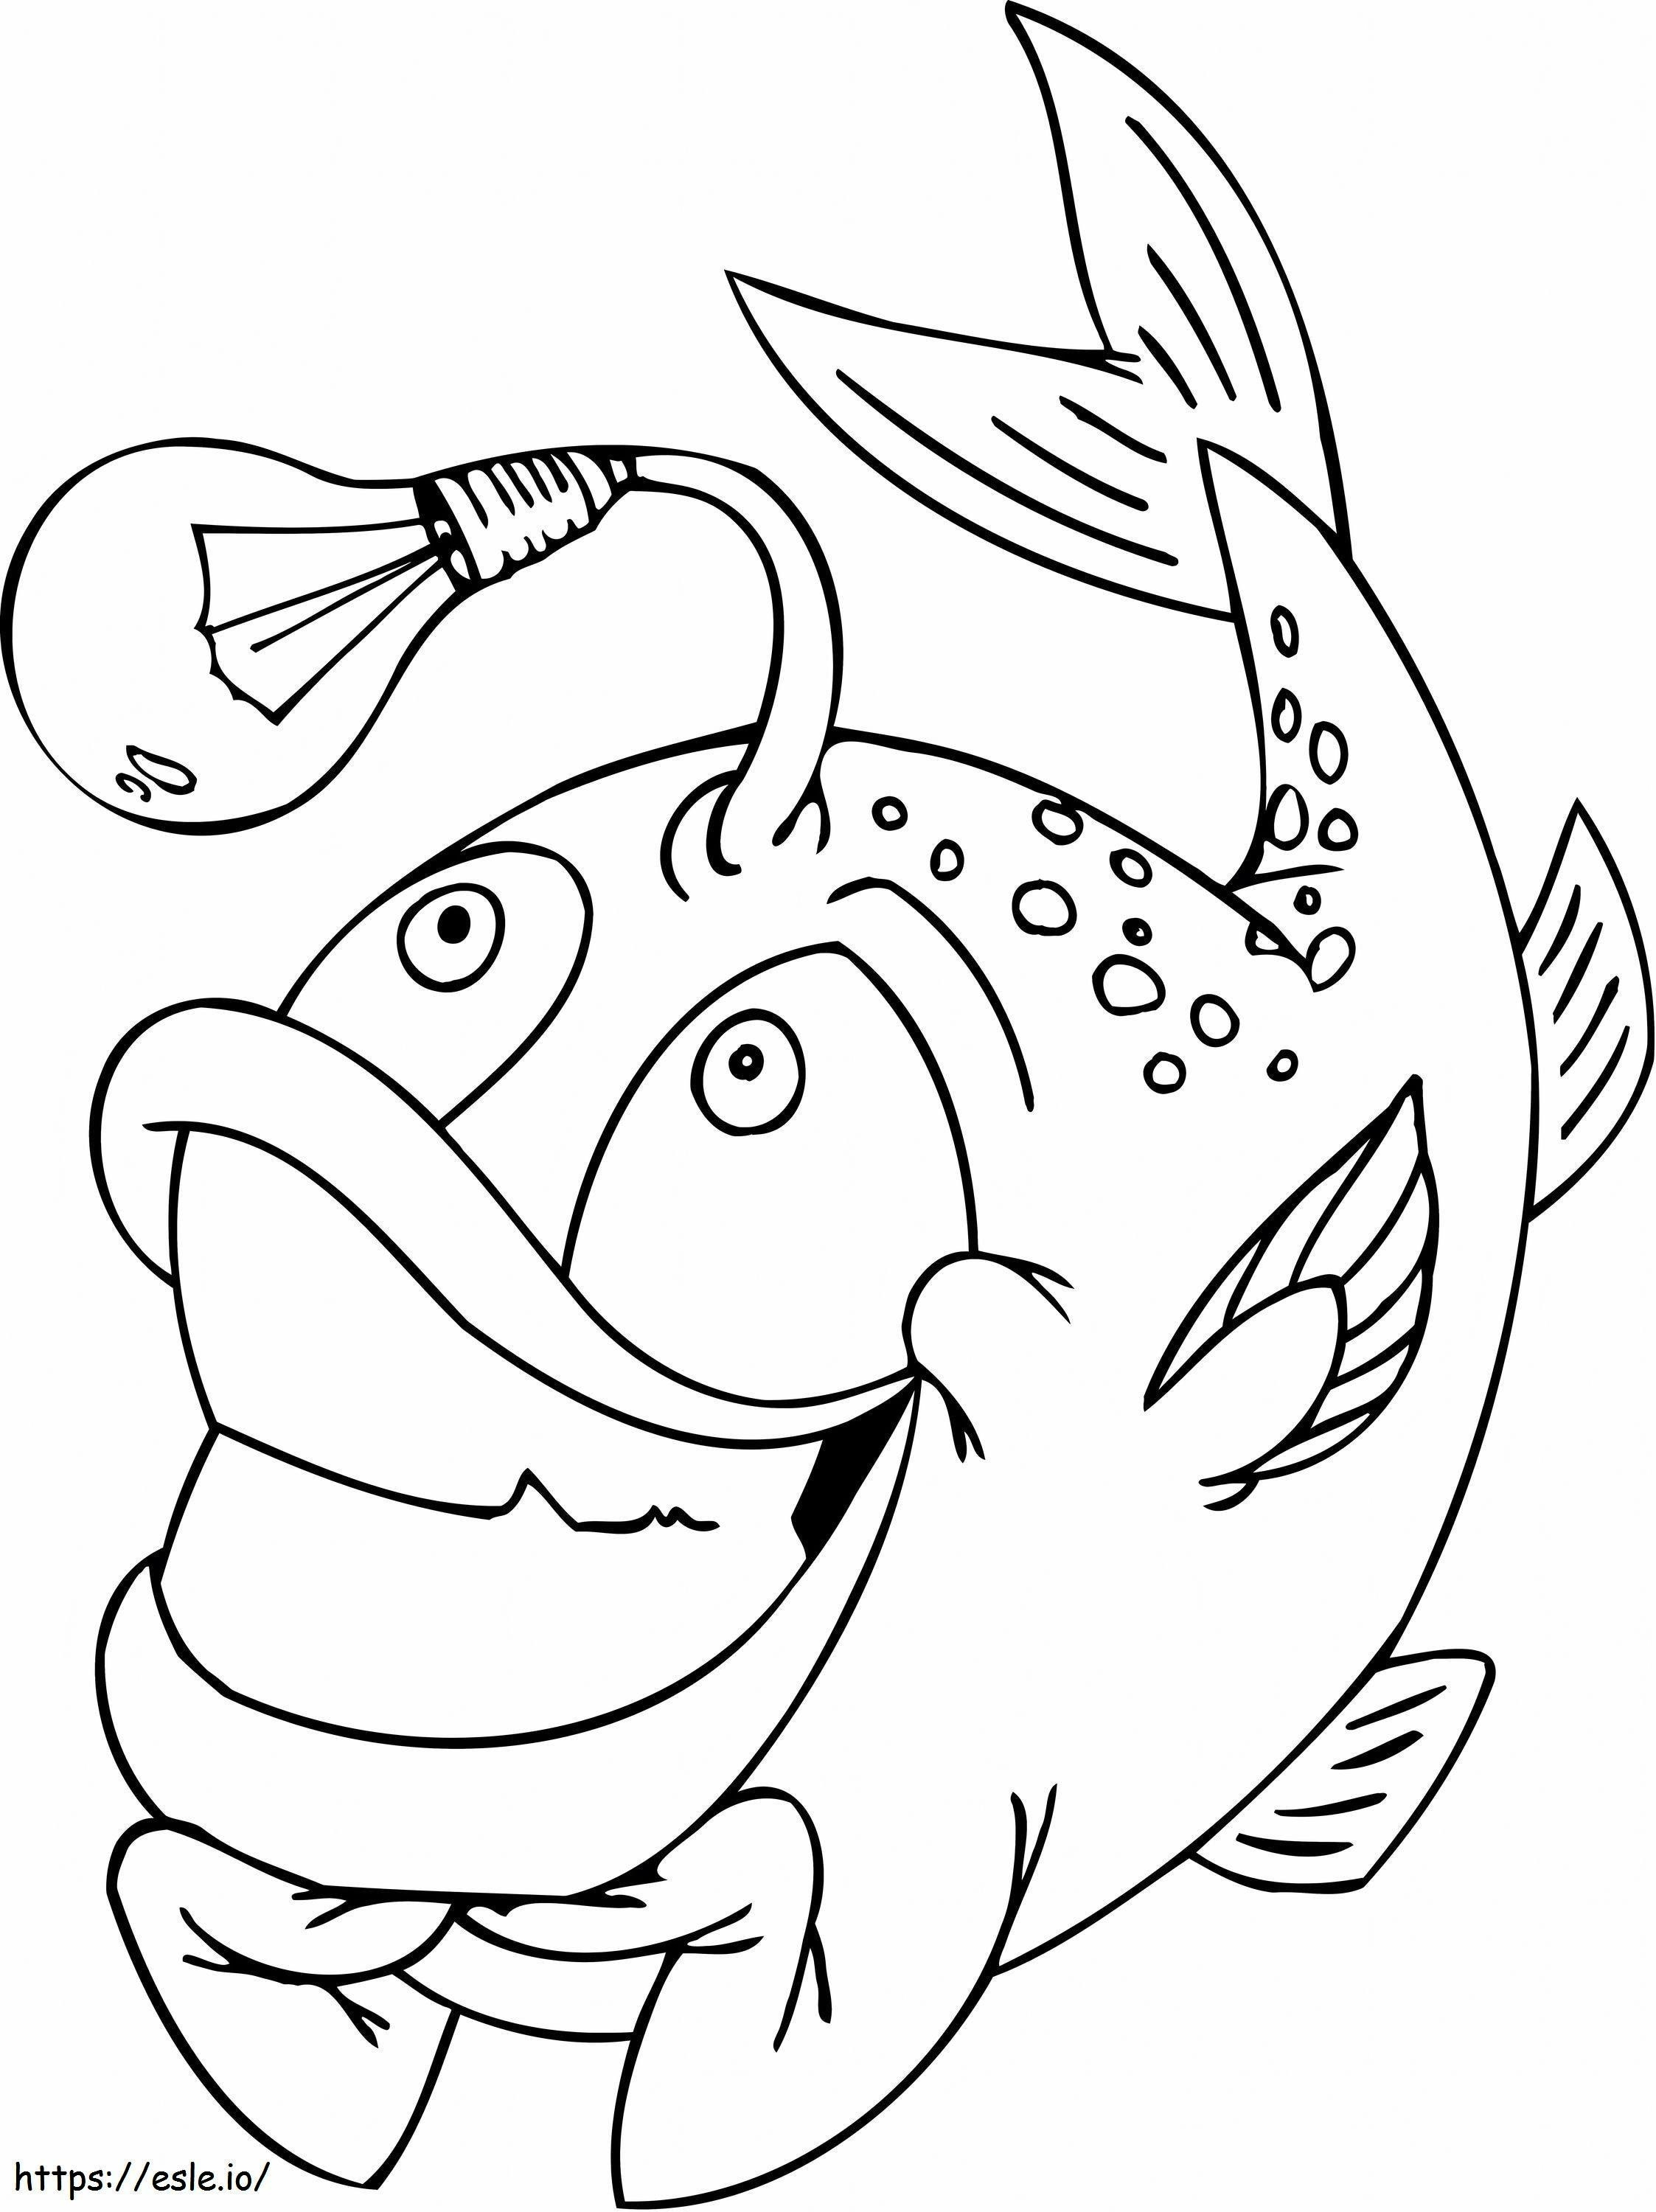 Coloriage 1545181971_Écailles de poisson drôles à imprimer dessin